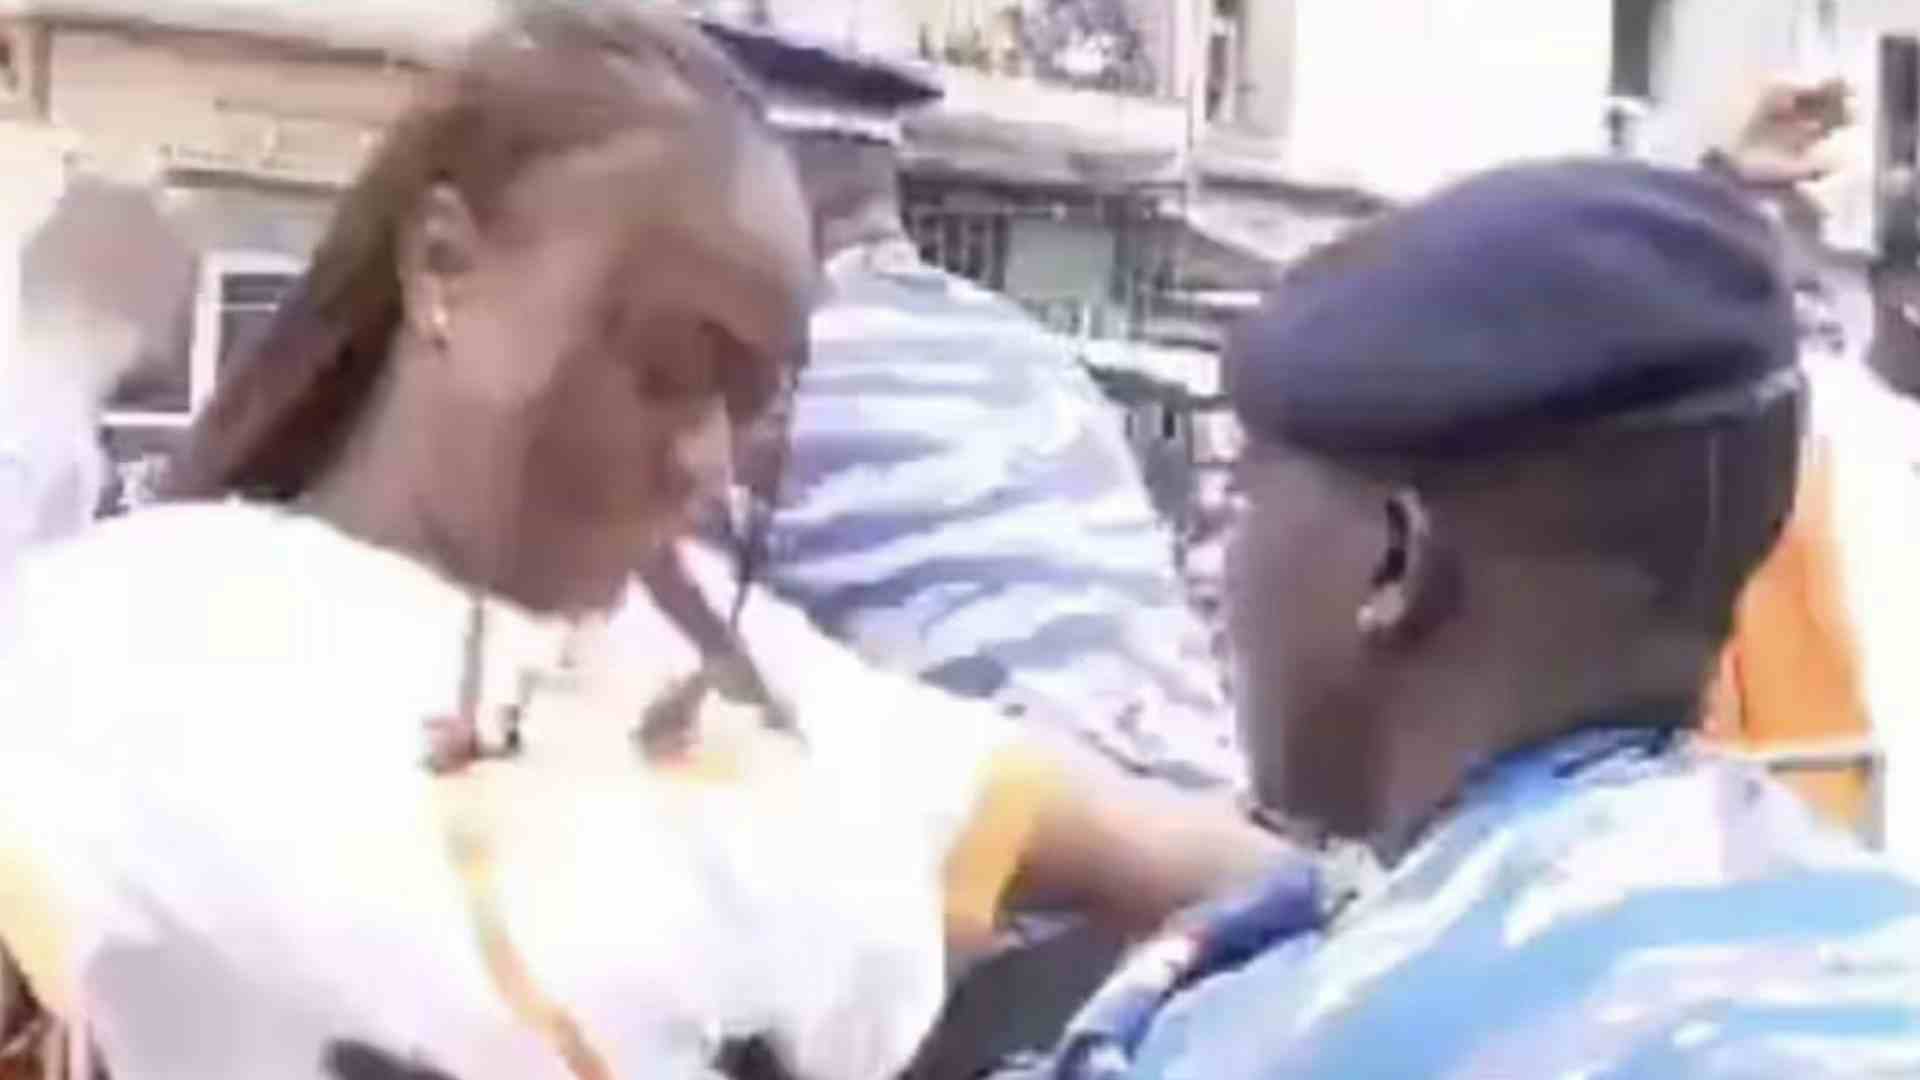 Coppa d'Africa, trattamento vergognoso nei confronti delle donne (VIDEO)